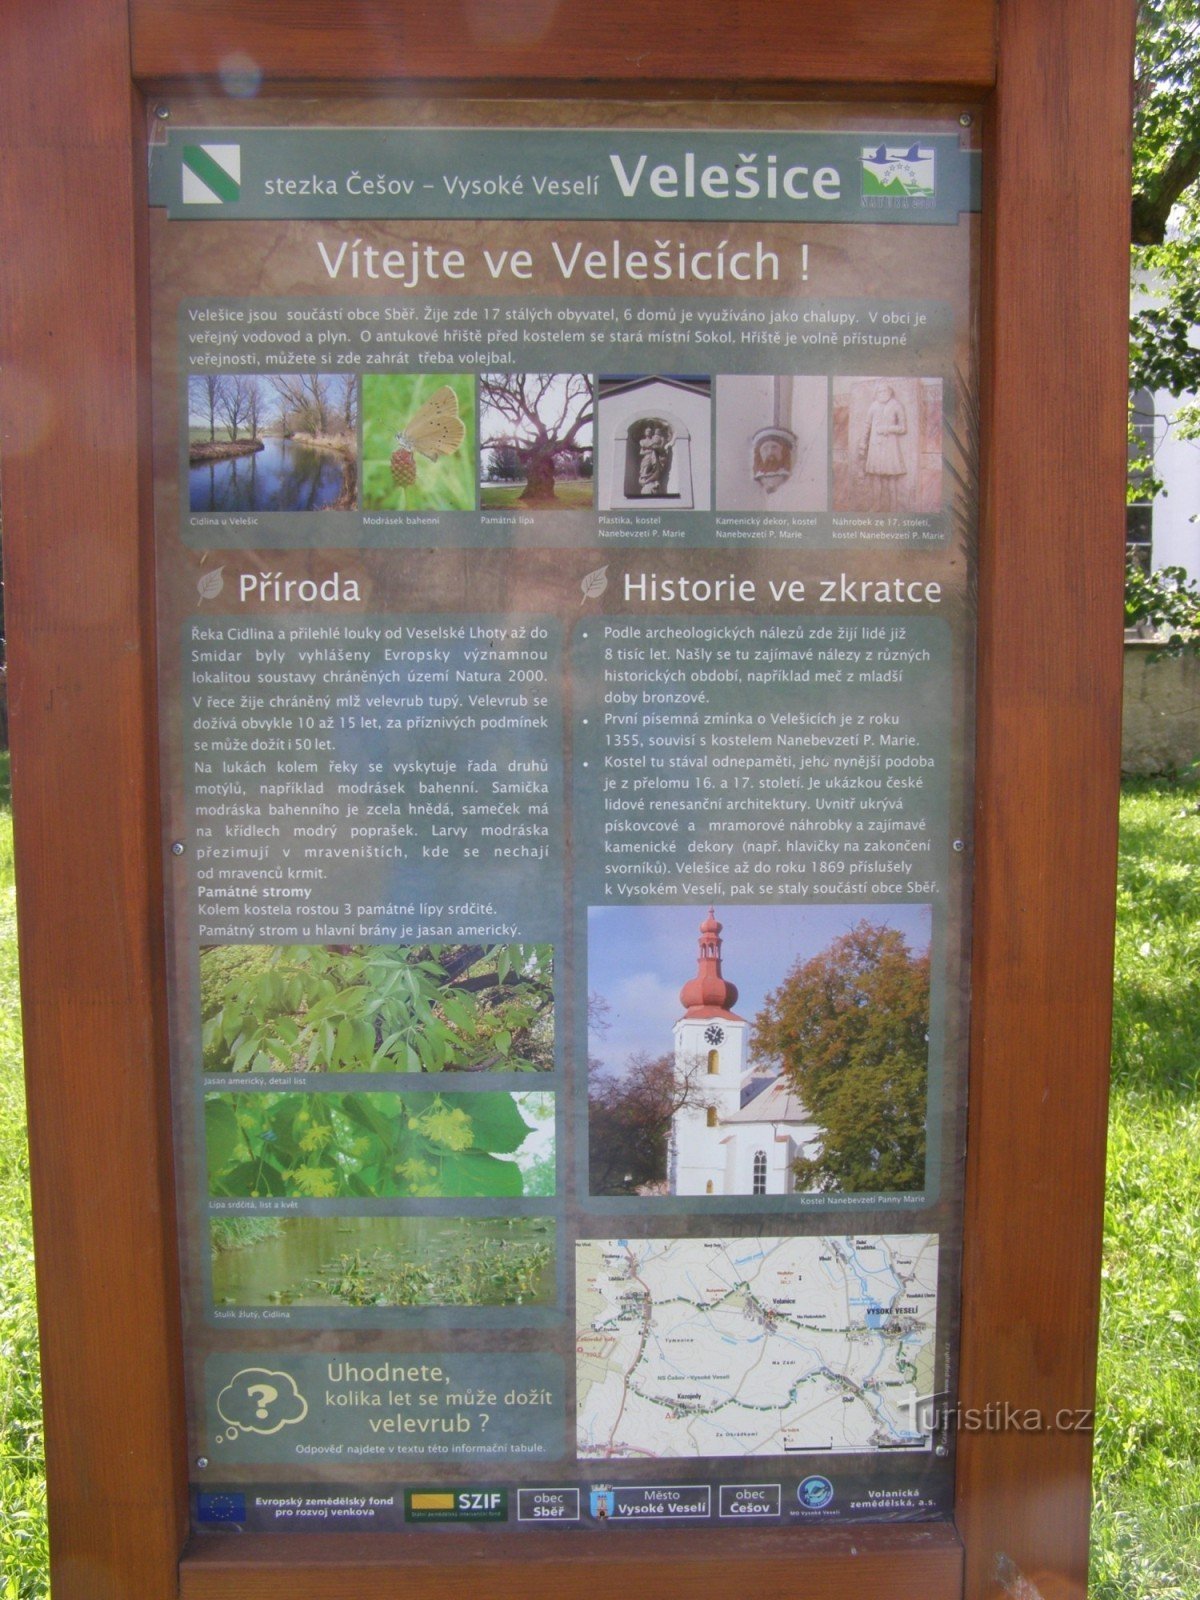 intersección de NS Češov-Vysoké Veselí - Velešice